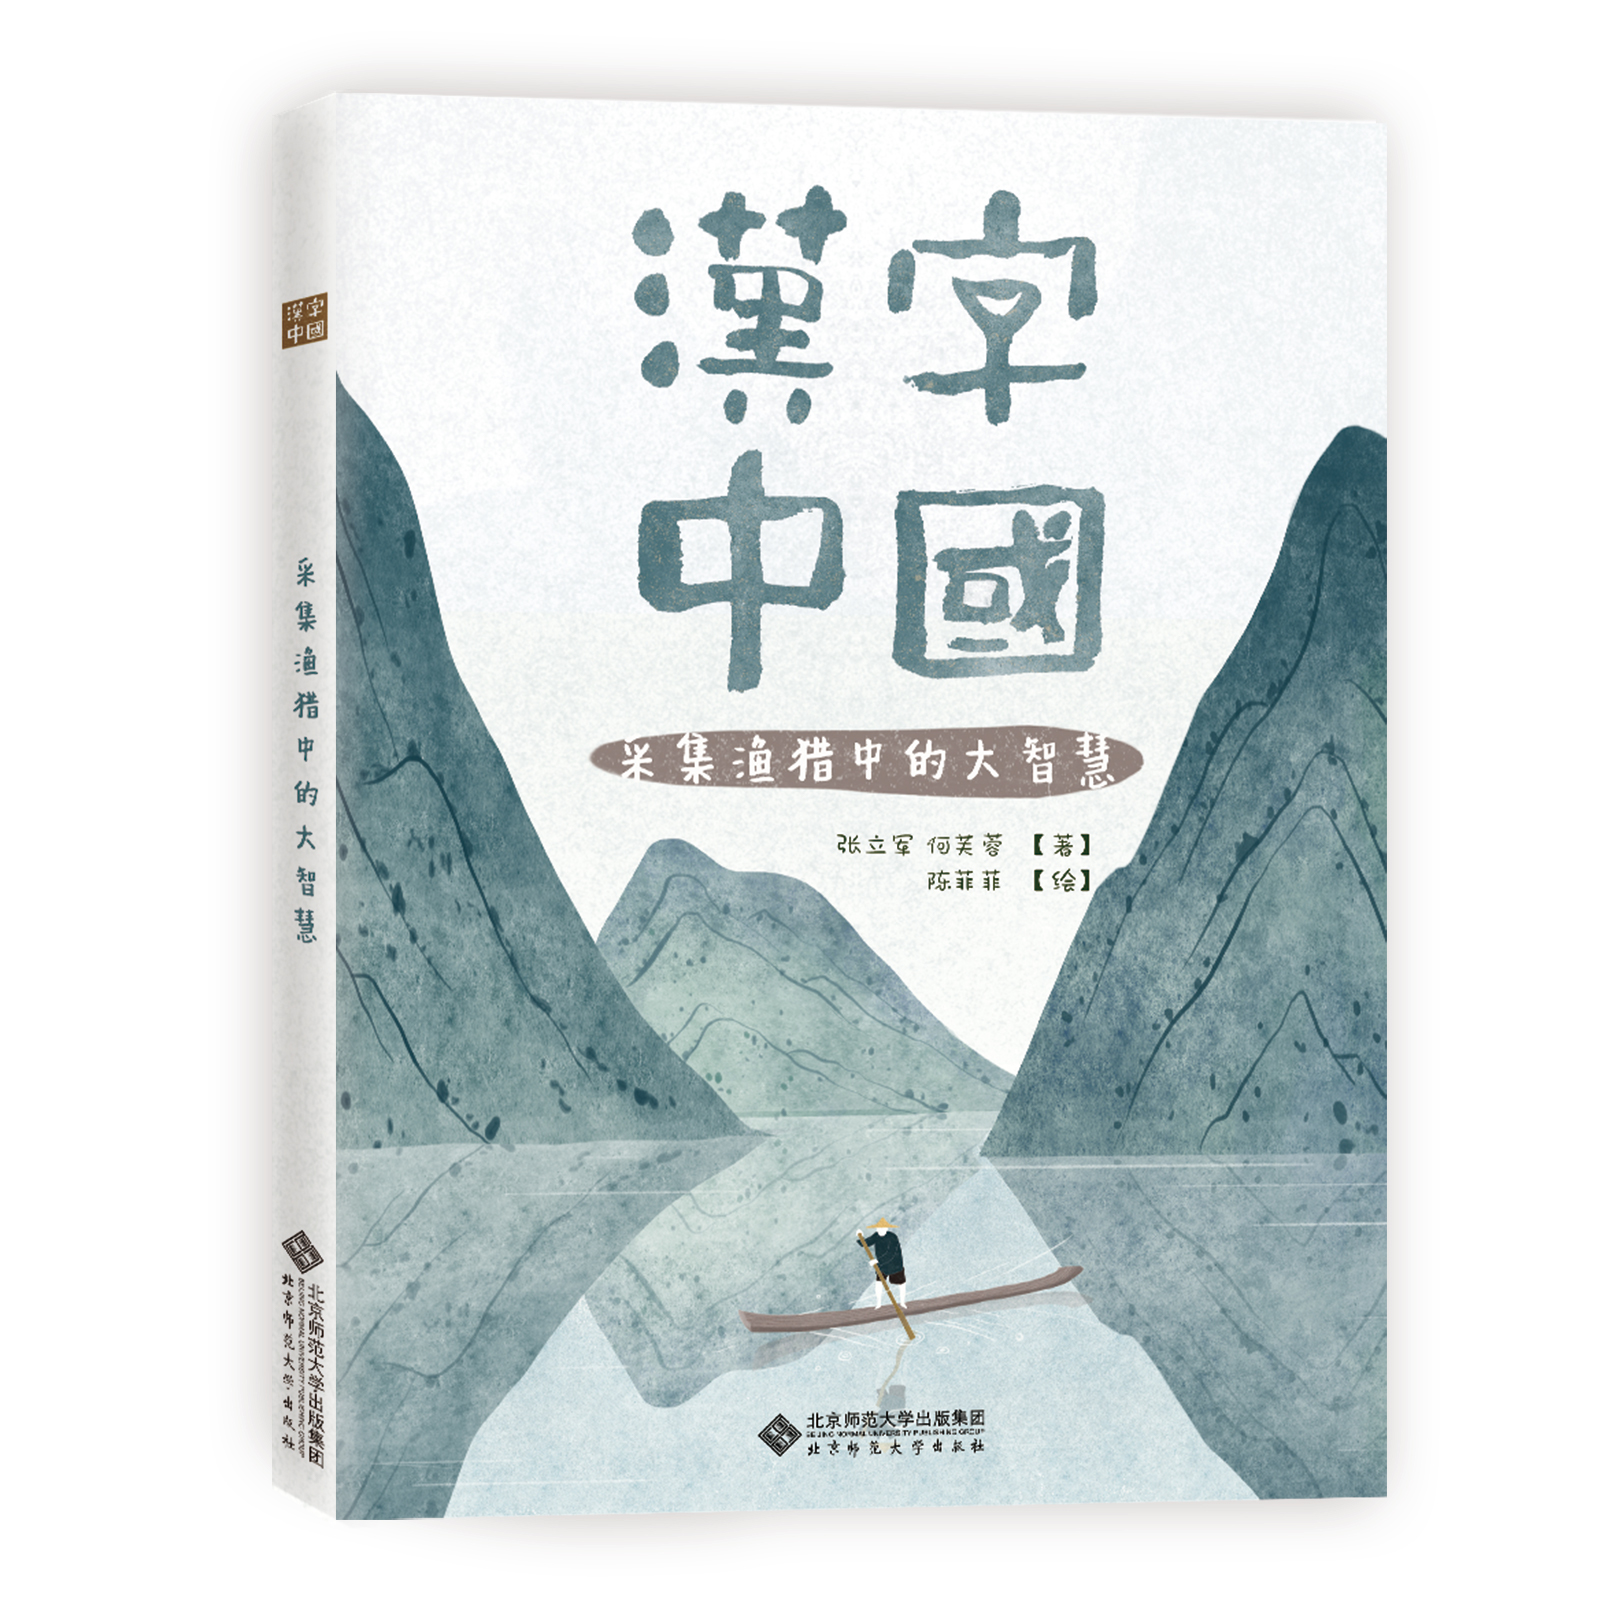 《汉字中国》系列绘本封面设计